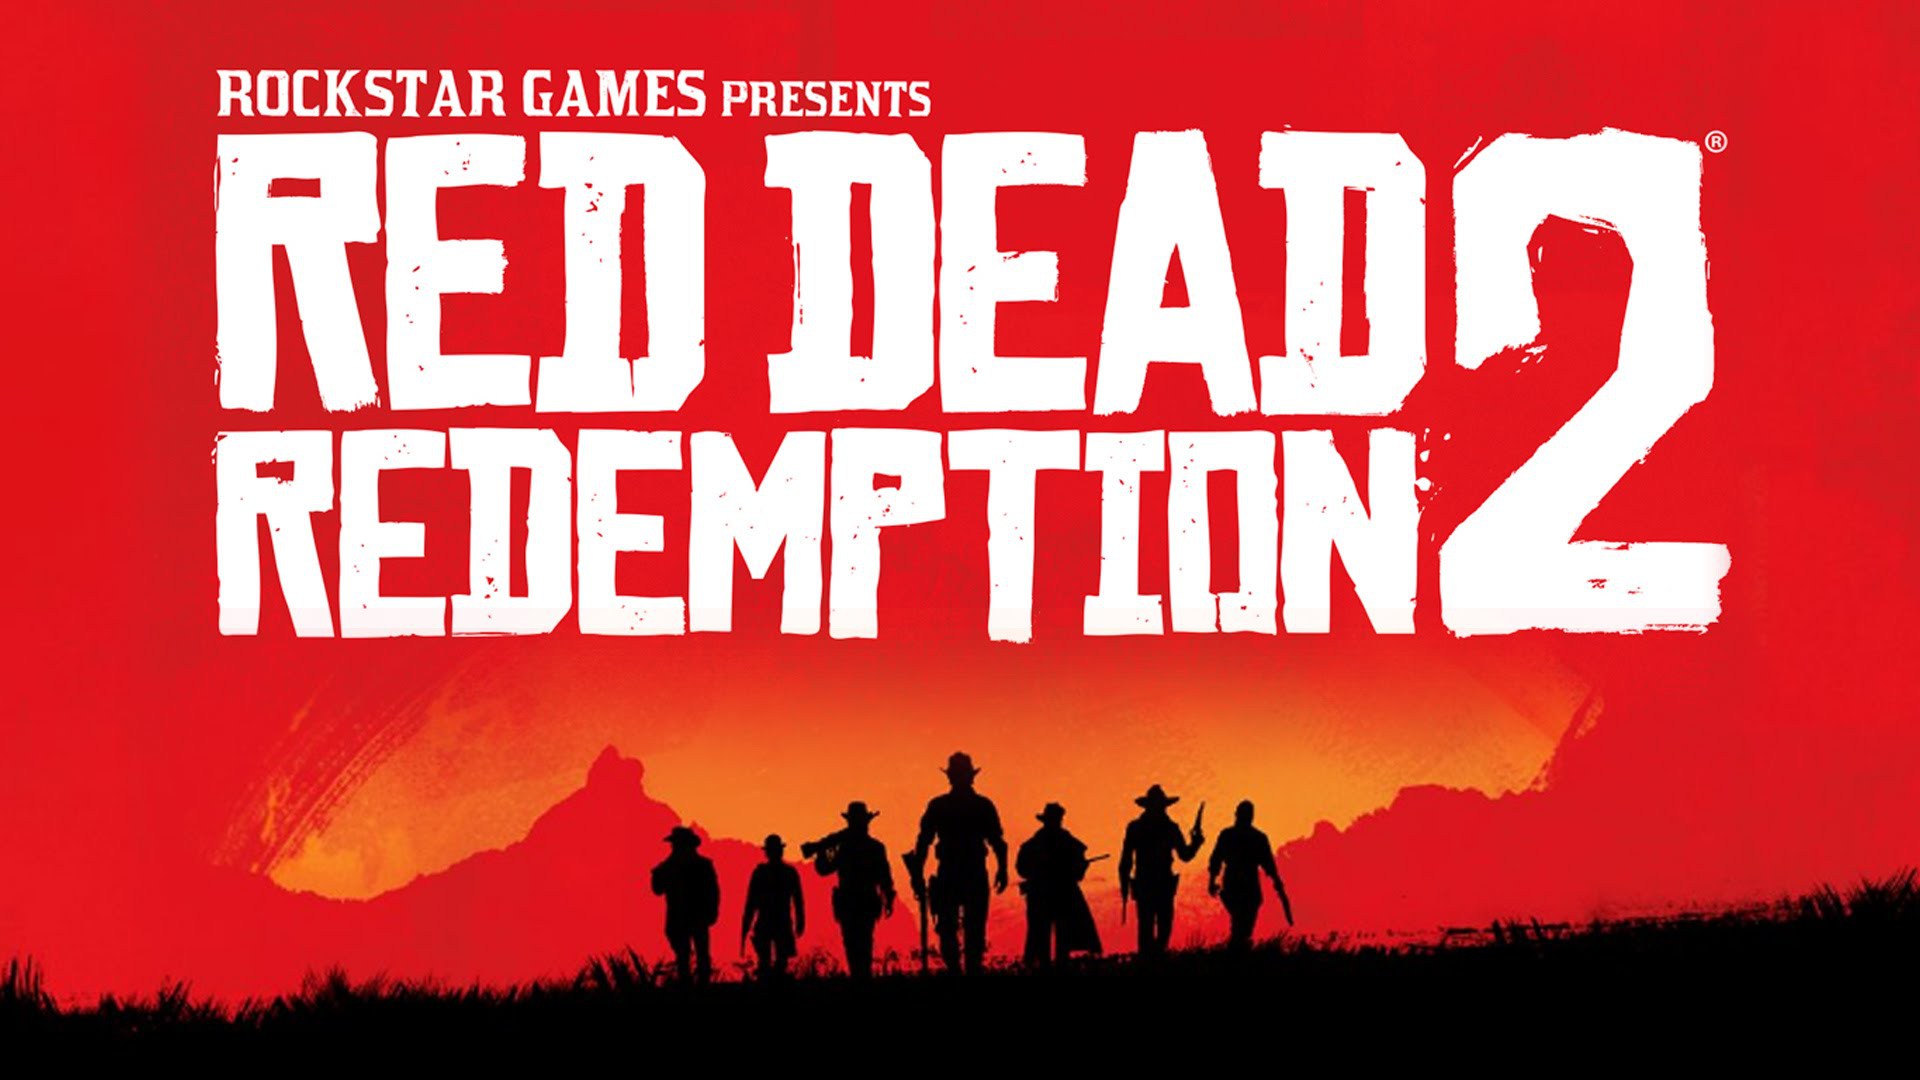 meups.com.br - Você viu que a versão física de Red Dead Redemption